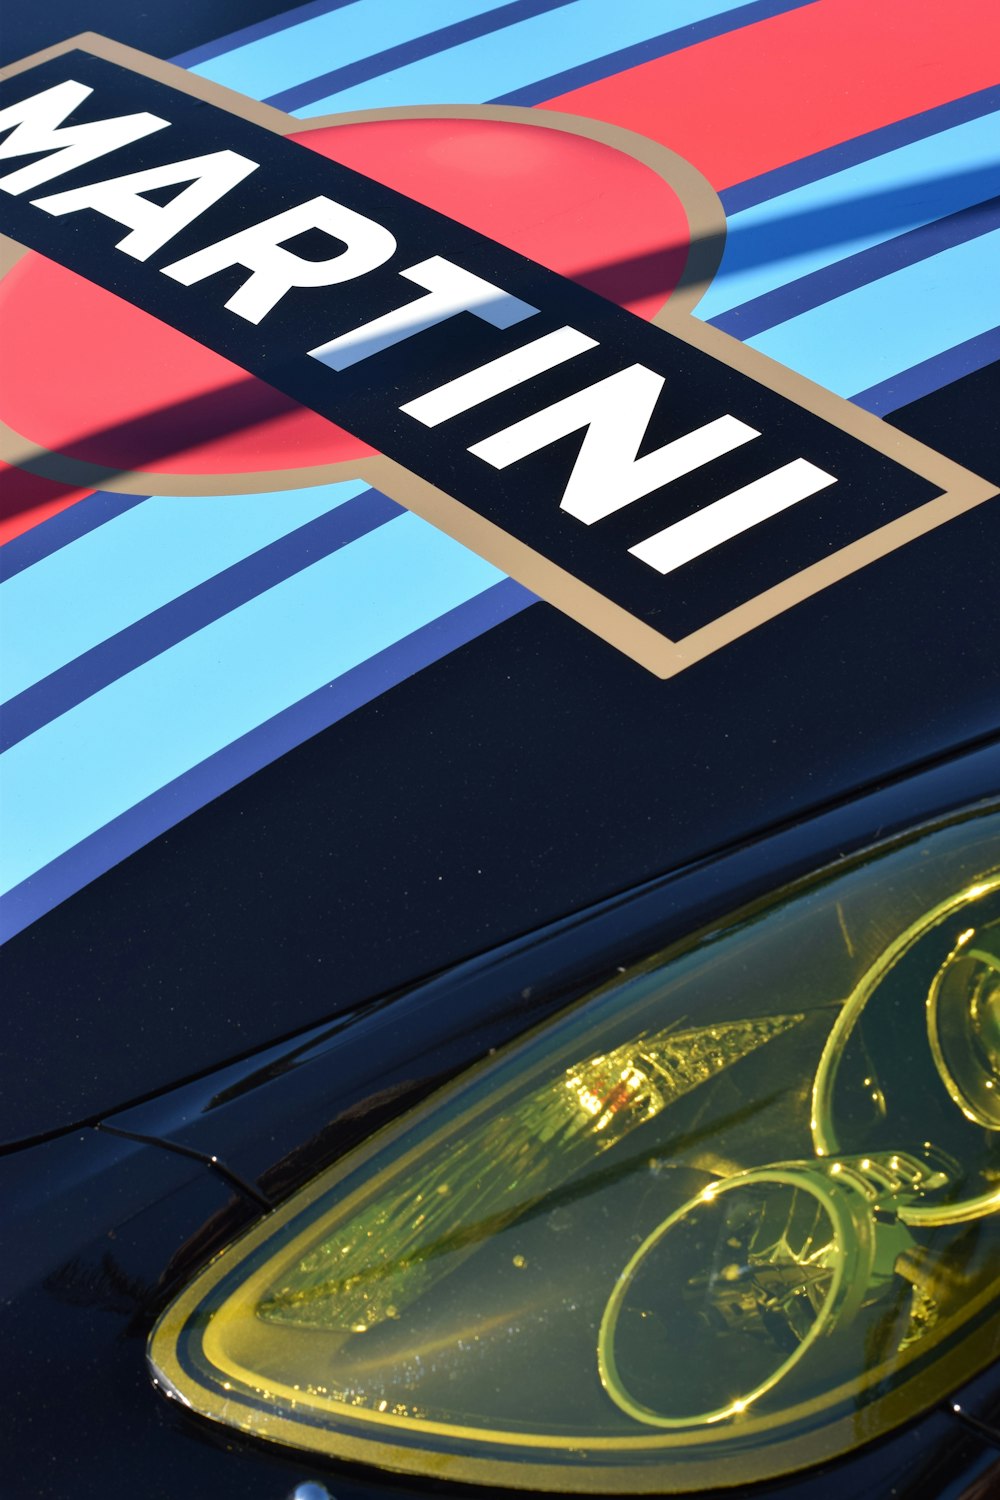 Martini car close-up photography